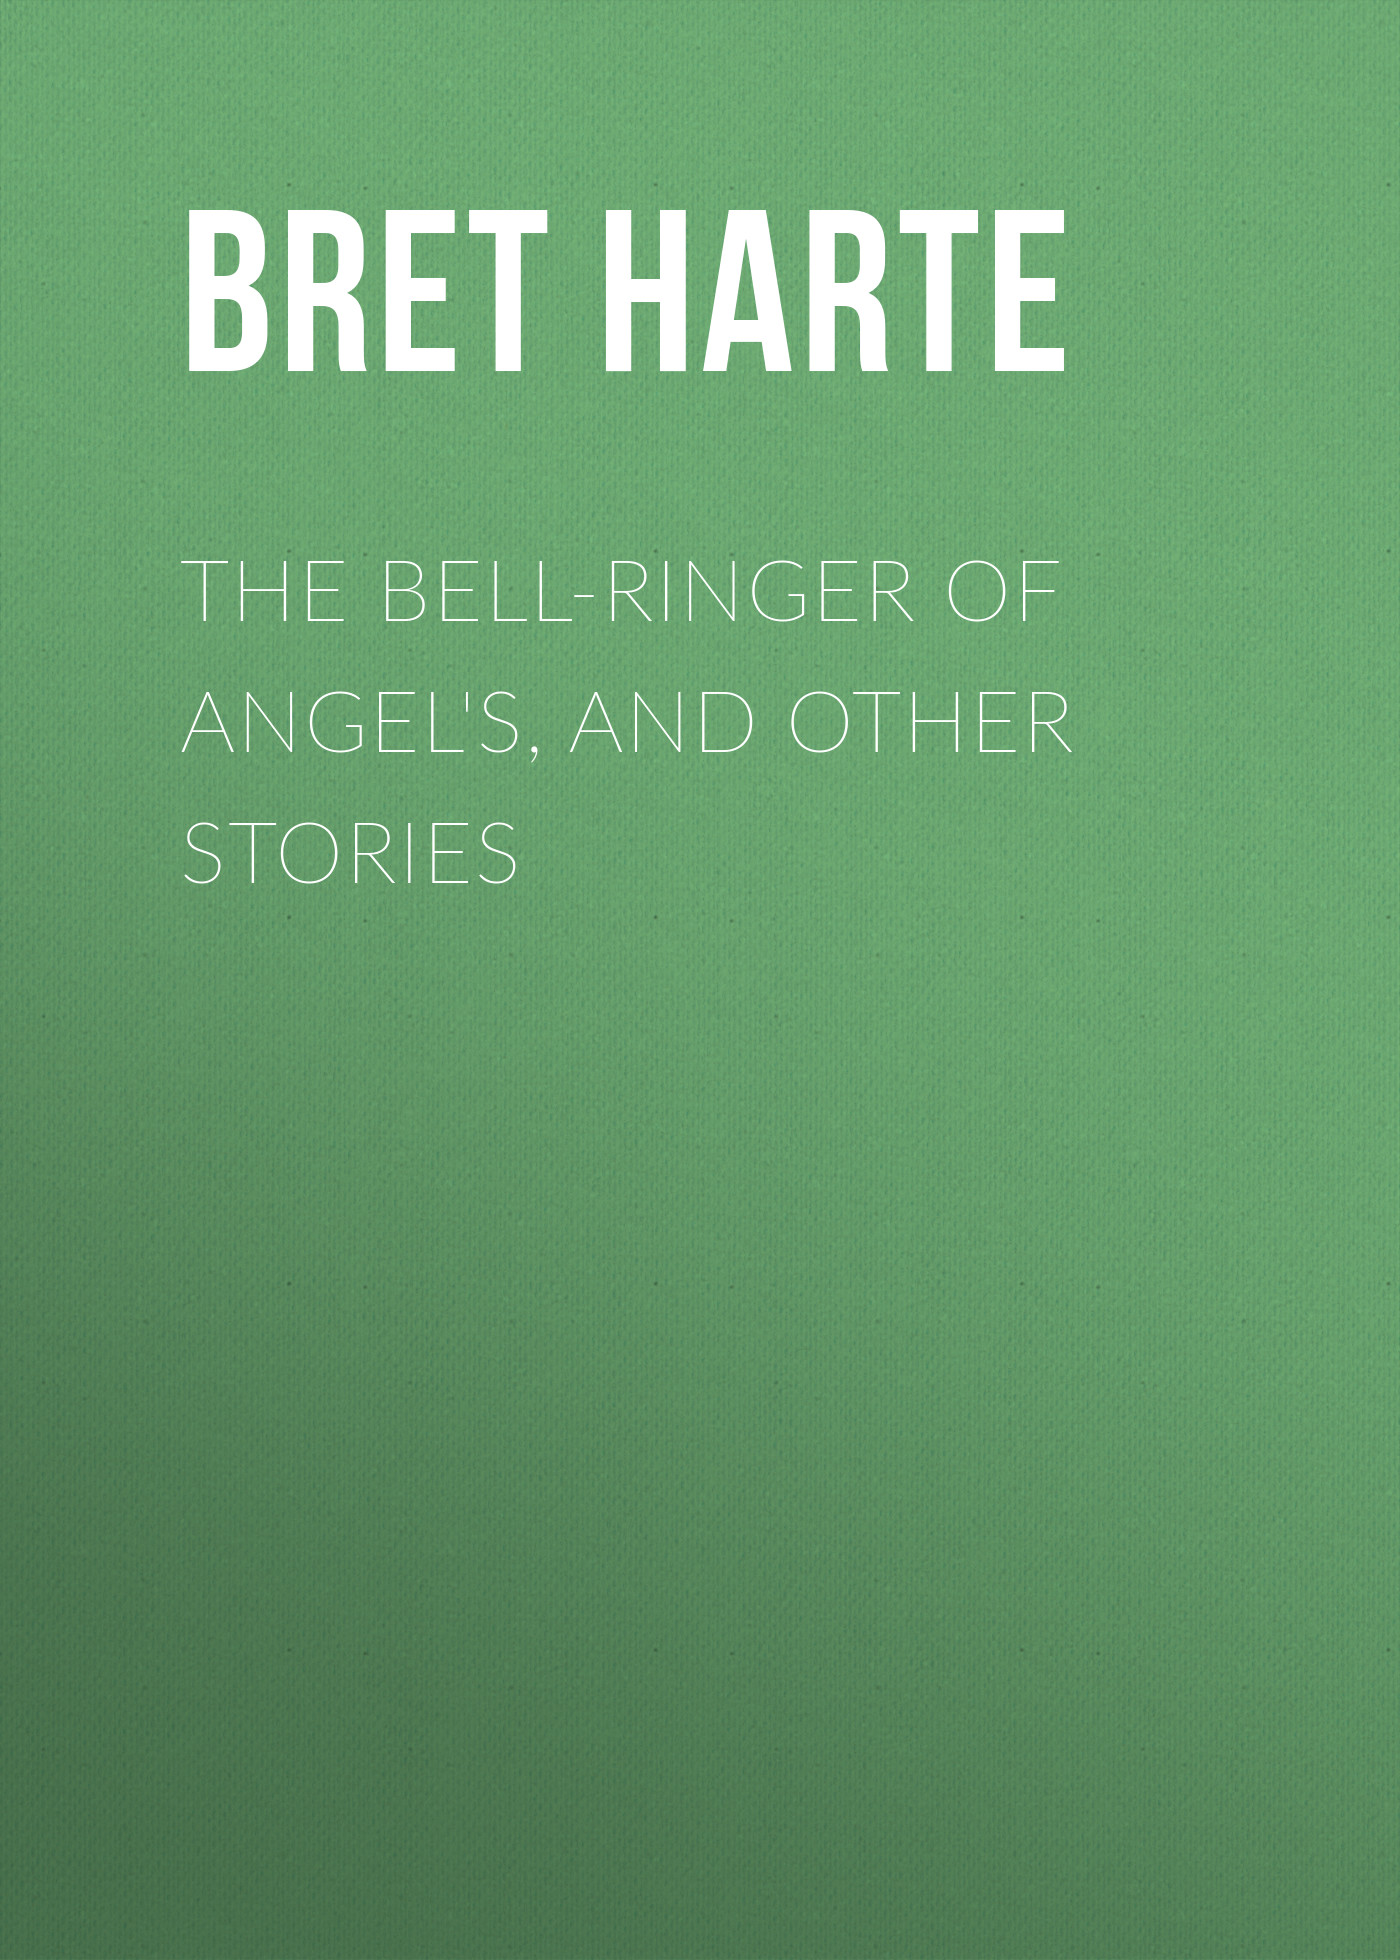 Книга The Bell-Ringer of Angel's, and Other Stories из серии , созданная Bret Harte, может относится к жанру Зарубежная фантастика, Литература 19 века, Зарубежная старинная литература, Зарубежная классика. Стоимость электронной книги The Bell-Ringer of Angel's, and Other Stories с идентификатором 36322252 составляет 0 руб.